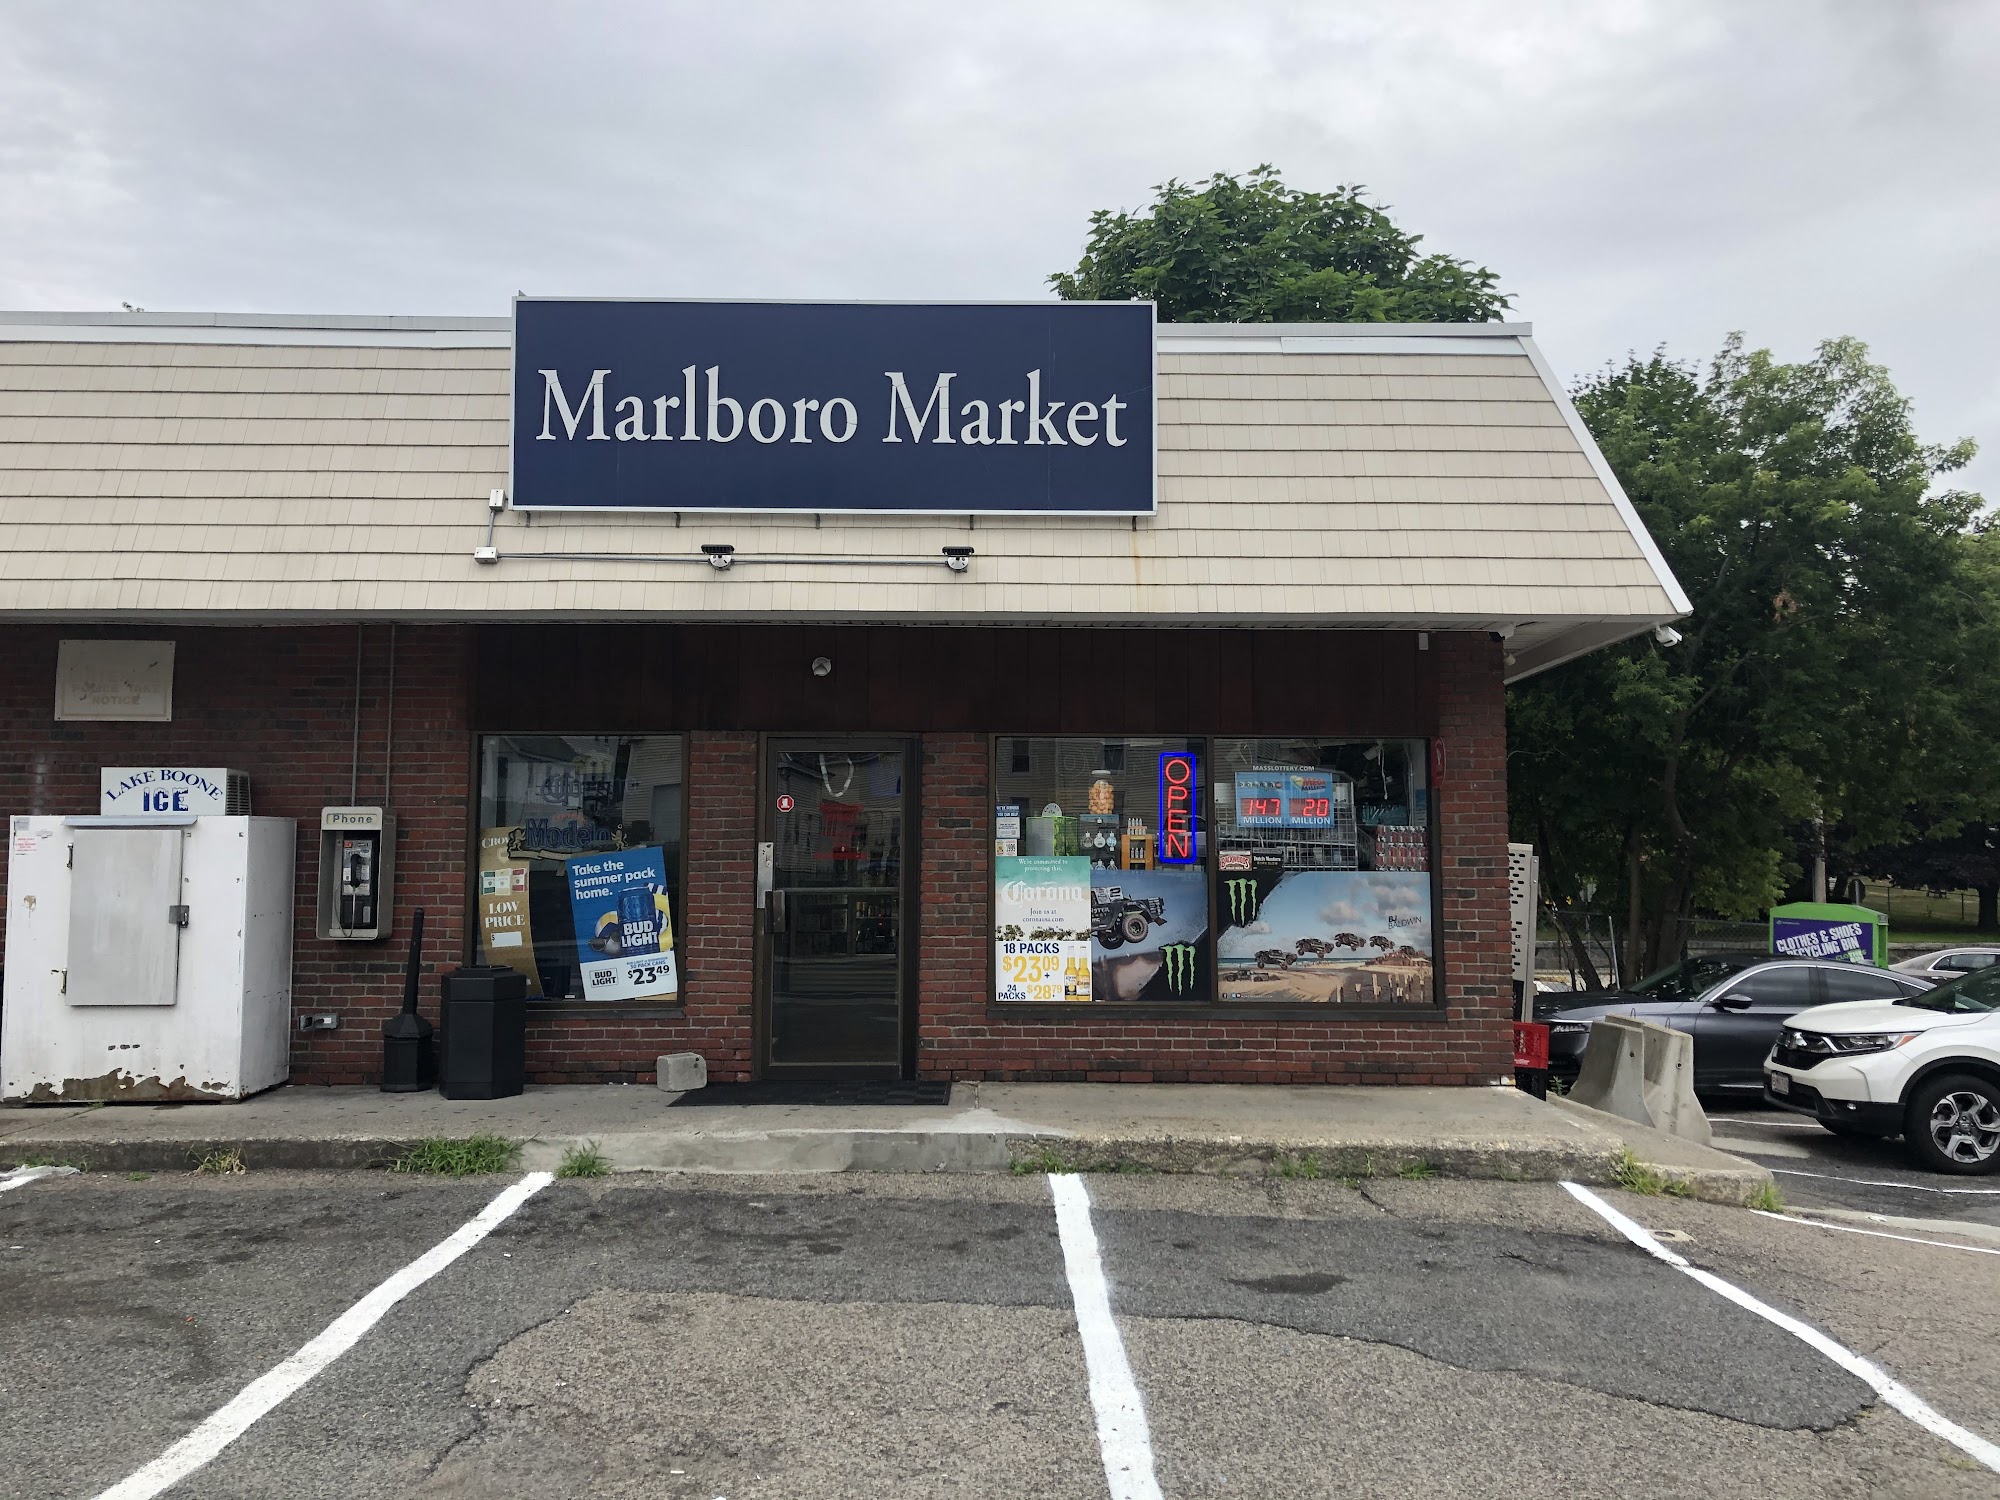 Marlboro Market